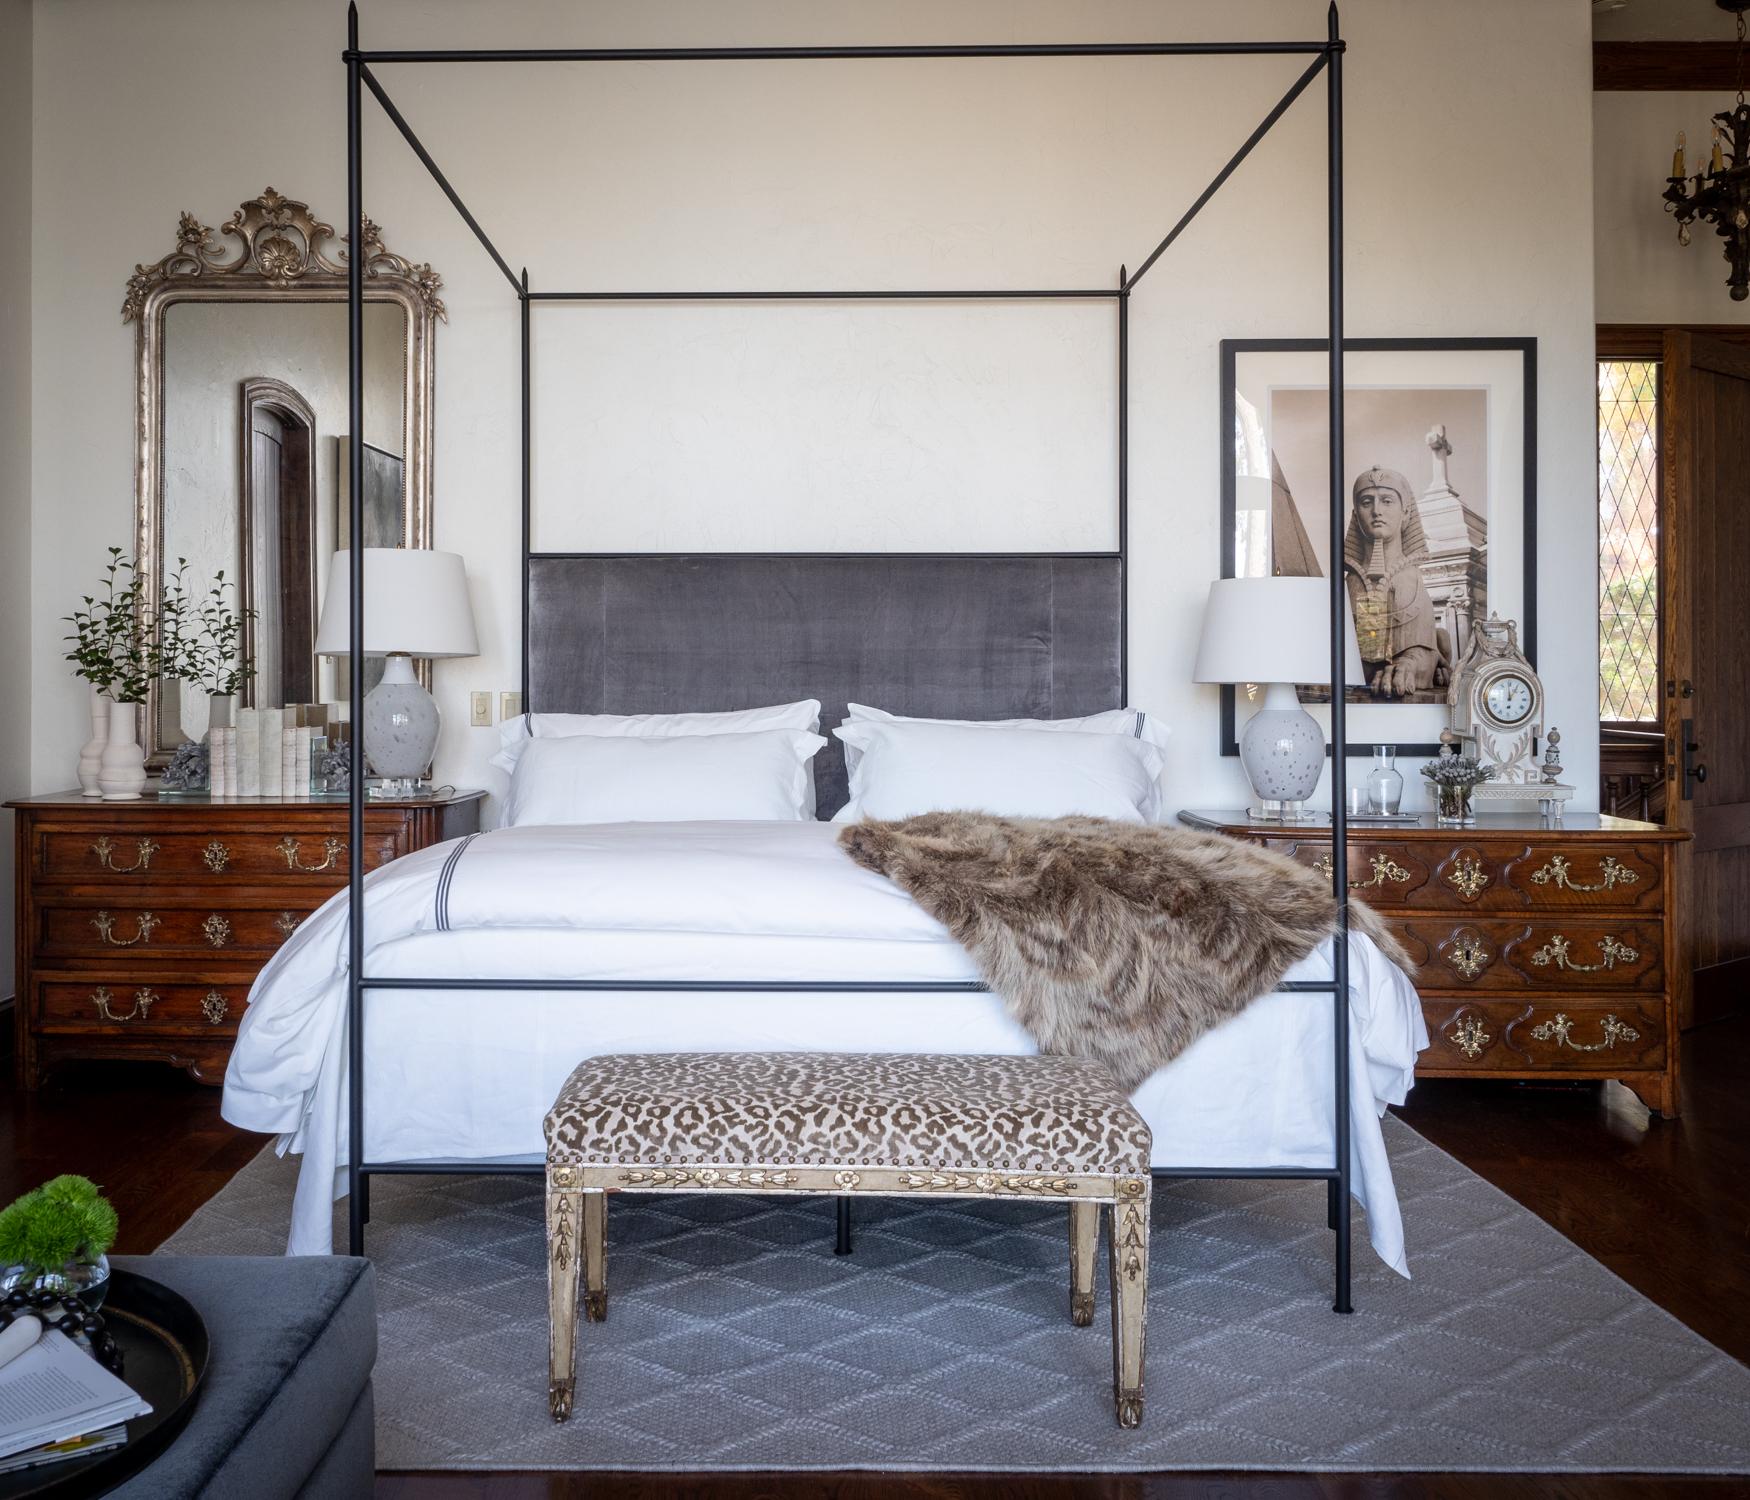 Ce lit à baldaquin de style Louis XVI avec tête de lit capitonnée de la collection personnalisée Tara Shaw Maison. Fabriqué à la main à la Nouvelle-Orléans. Tête de lit standard revêtue d'un lin belge épais de couleur huître. Disponible en tailles